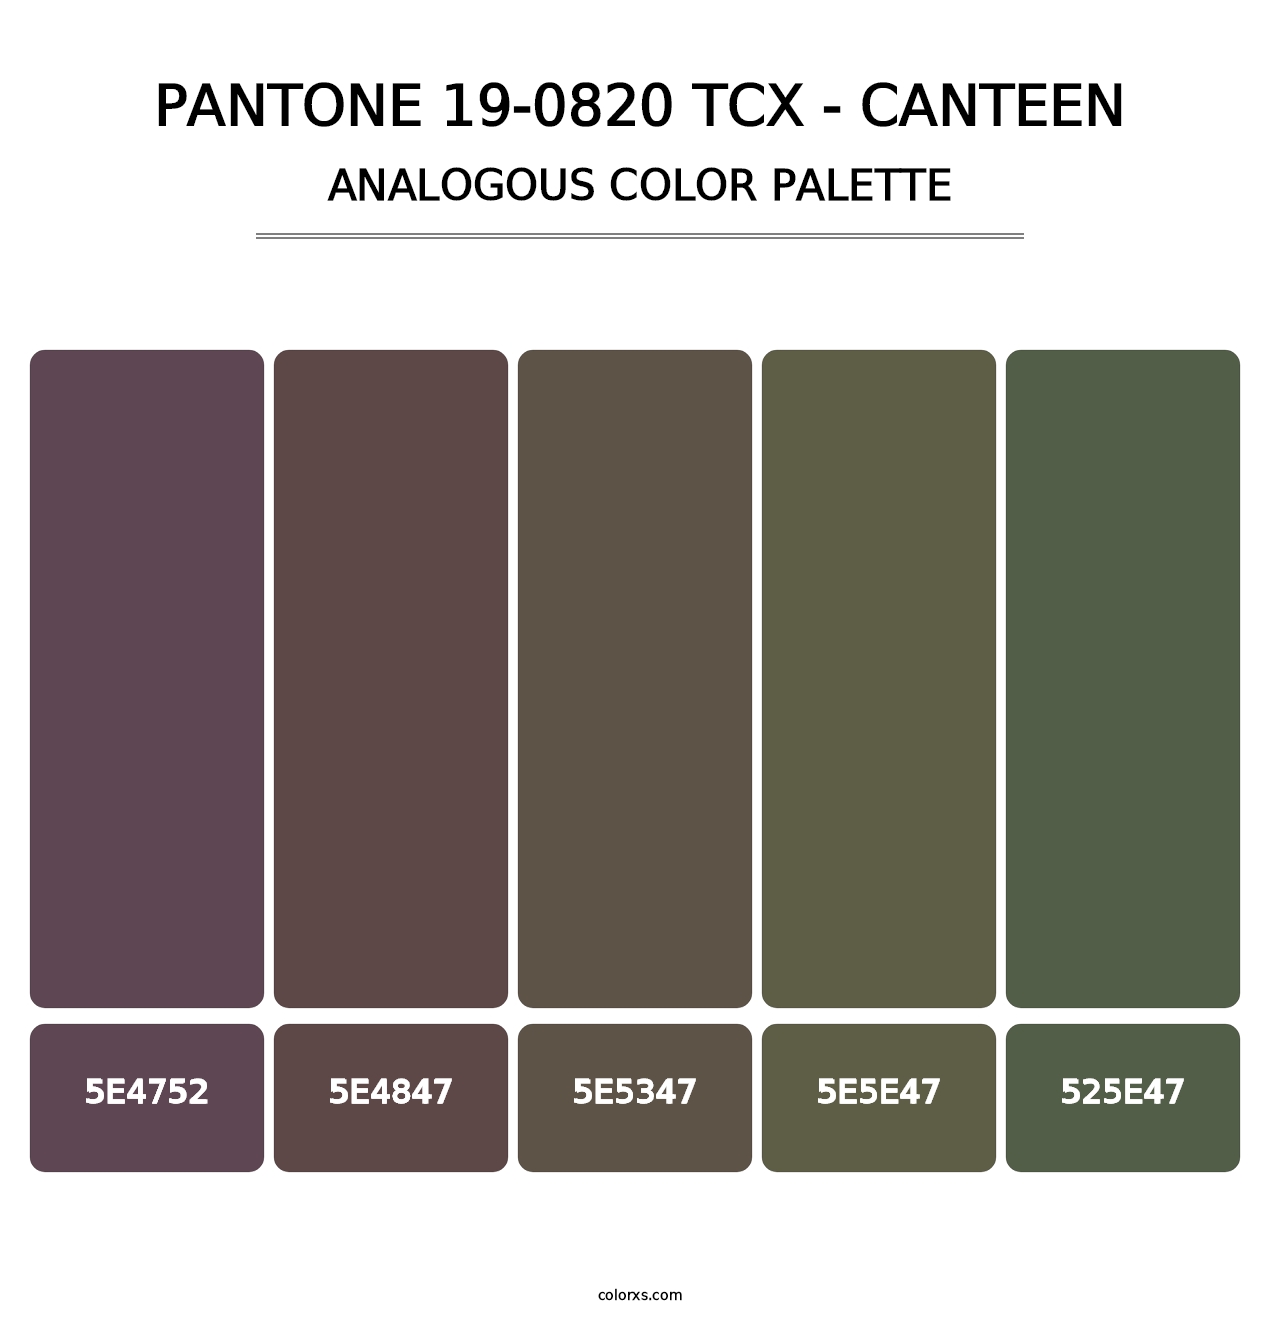 PANTONE 19-0820 TCX - Canteen - Analogous Color Palette